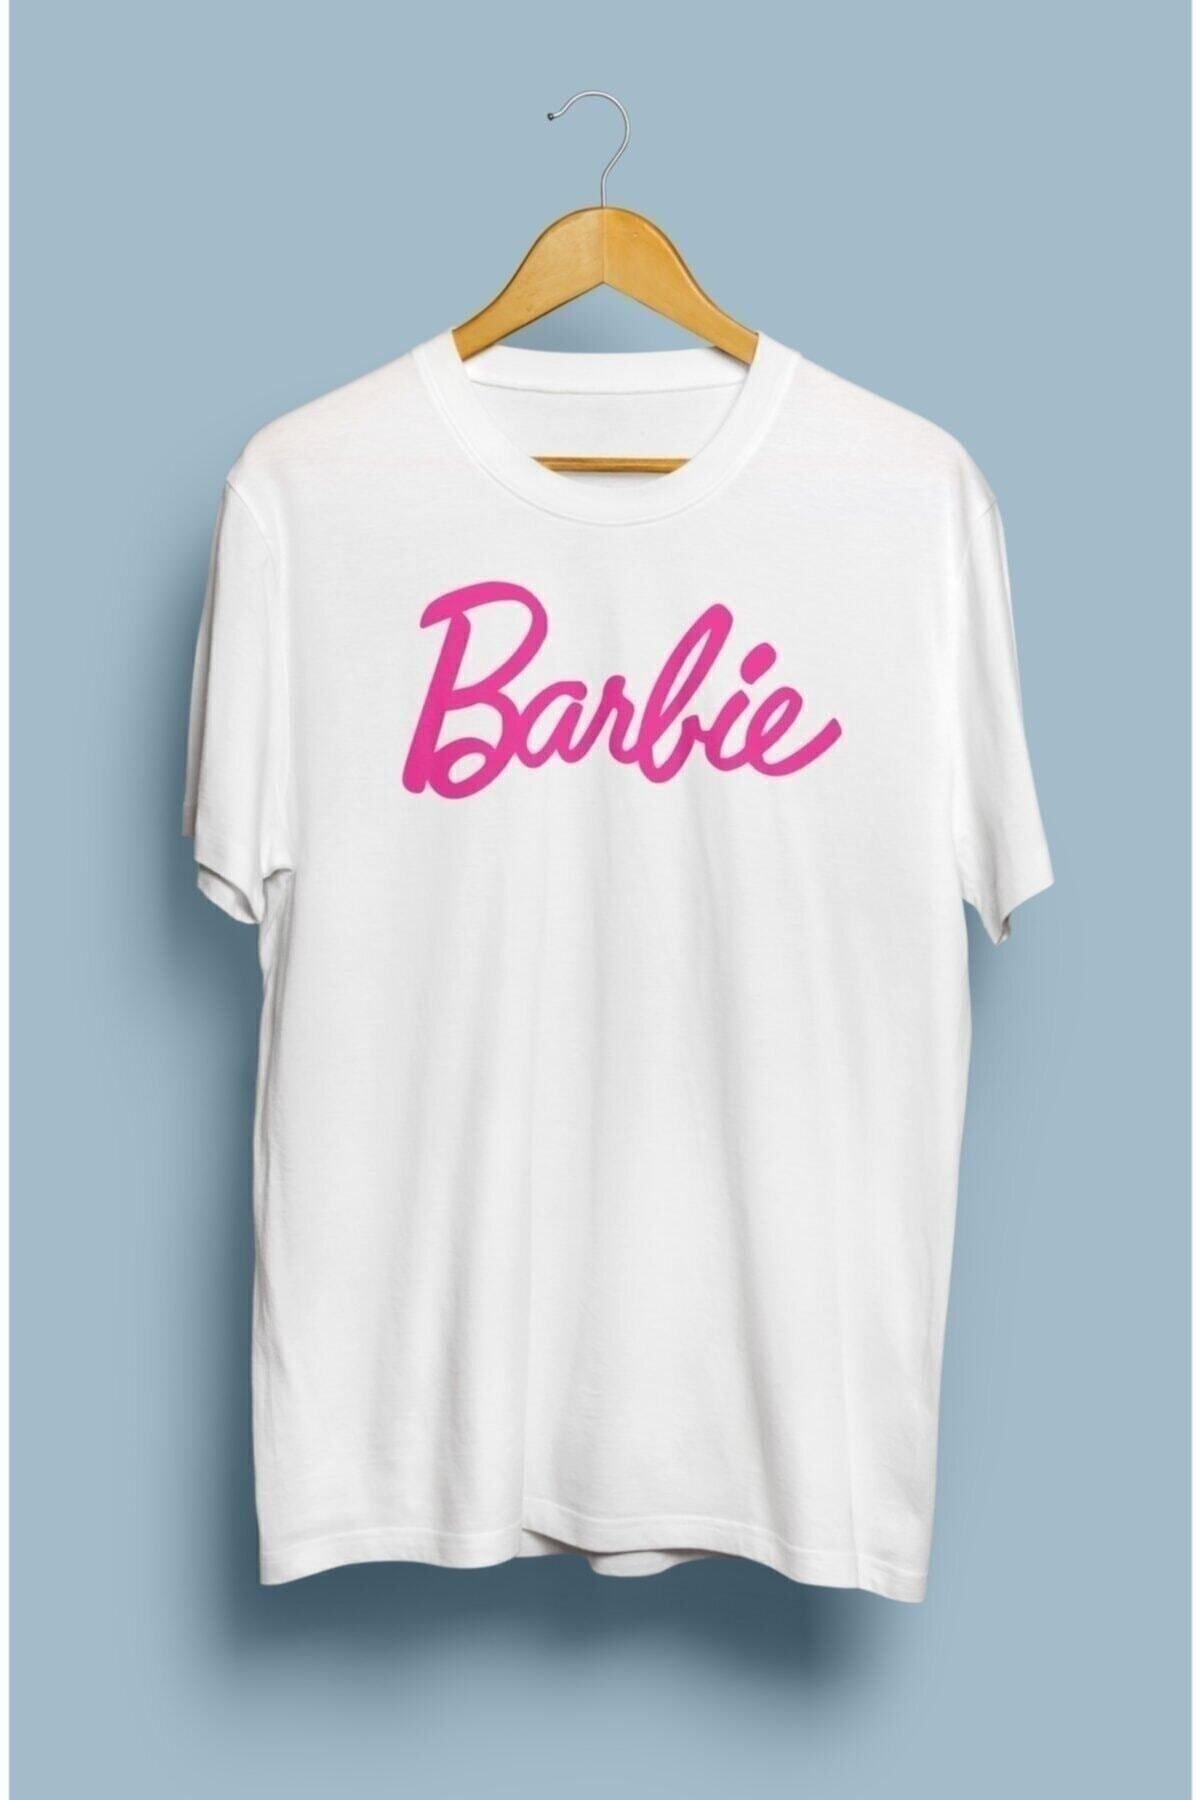 MARECASH Barbie Tasarım Baskılı Tişört